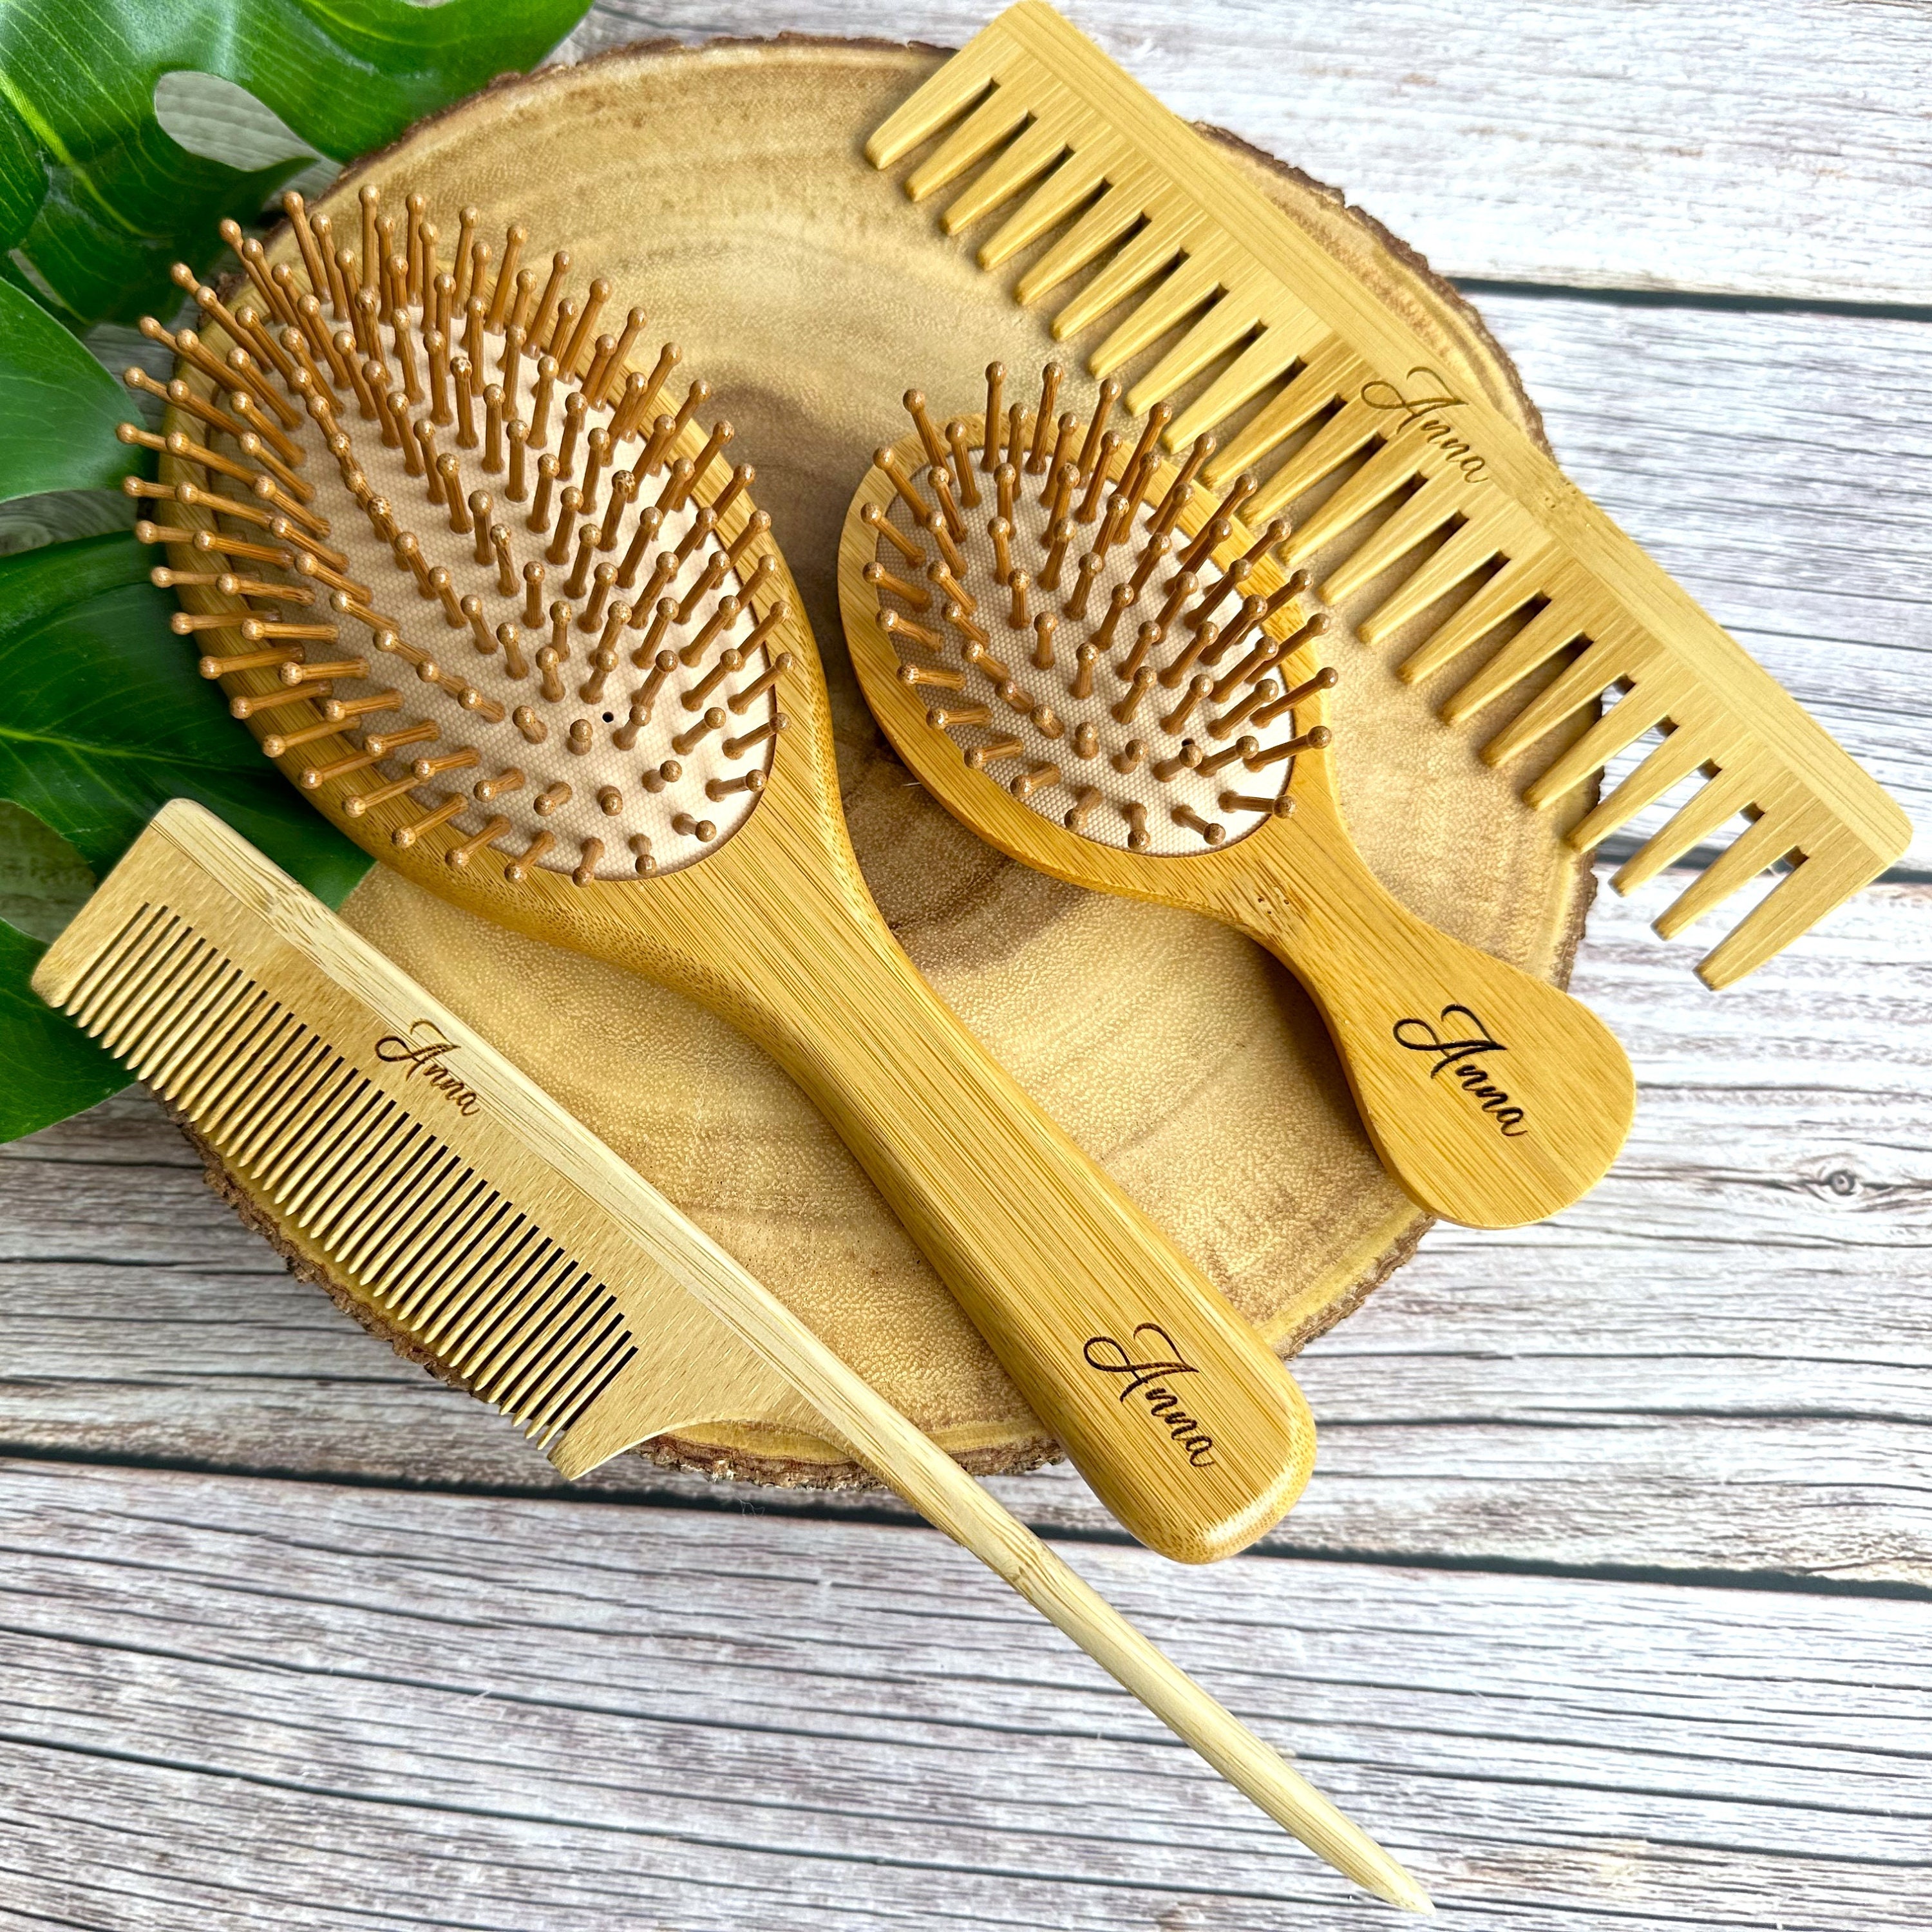 Cepillo para el cabello, cepillo de bambú para el pelo de paleta de madera,  peine de masaje, promueve y protege el cuero cabelludo para peinar.